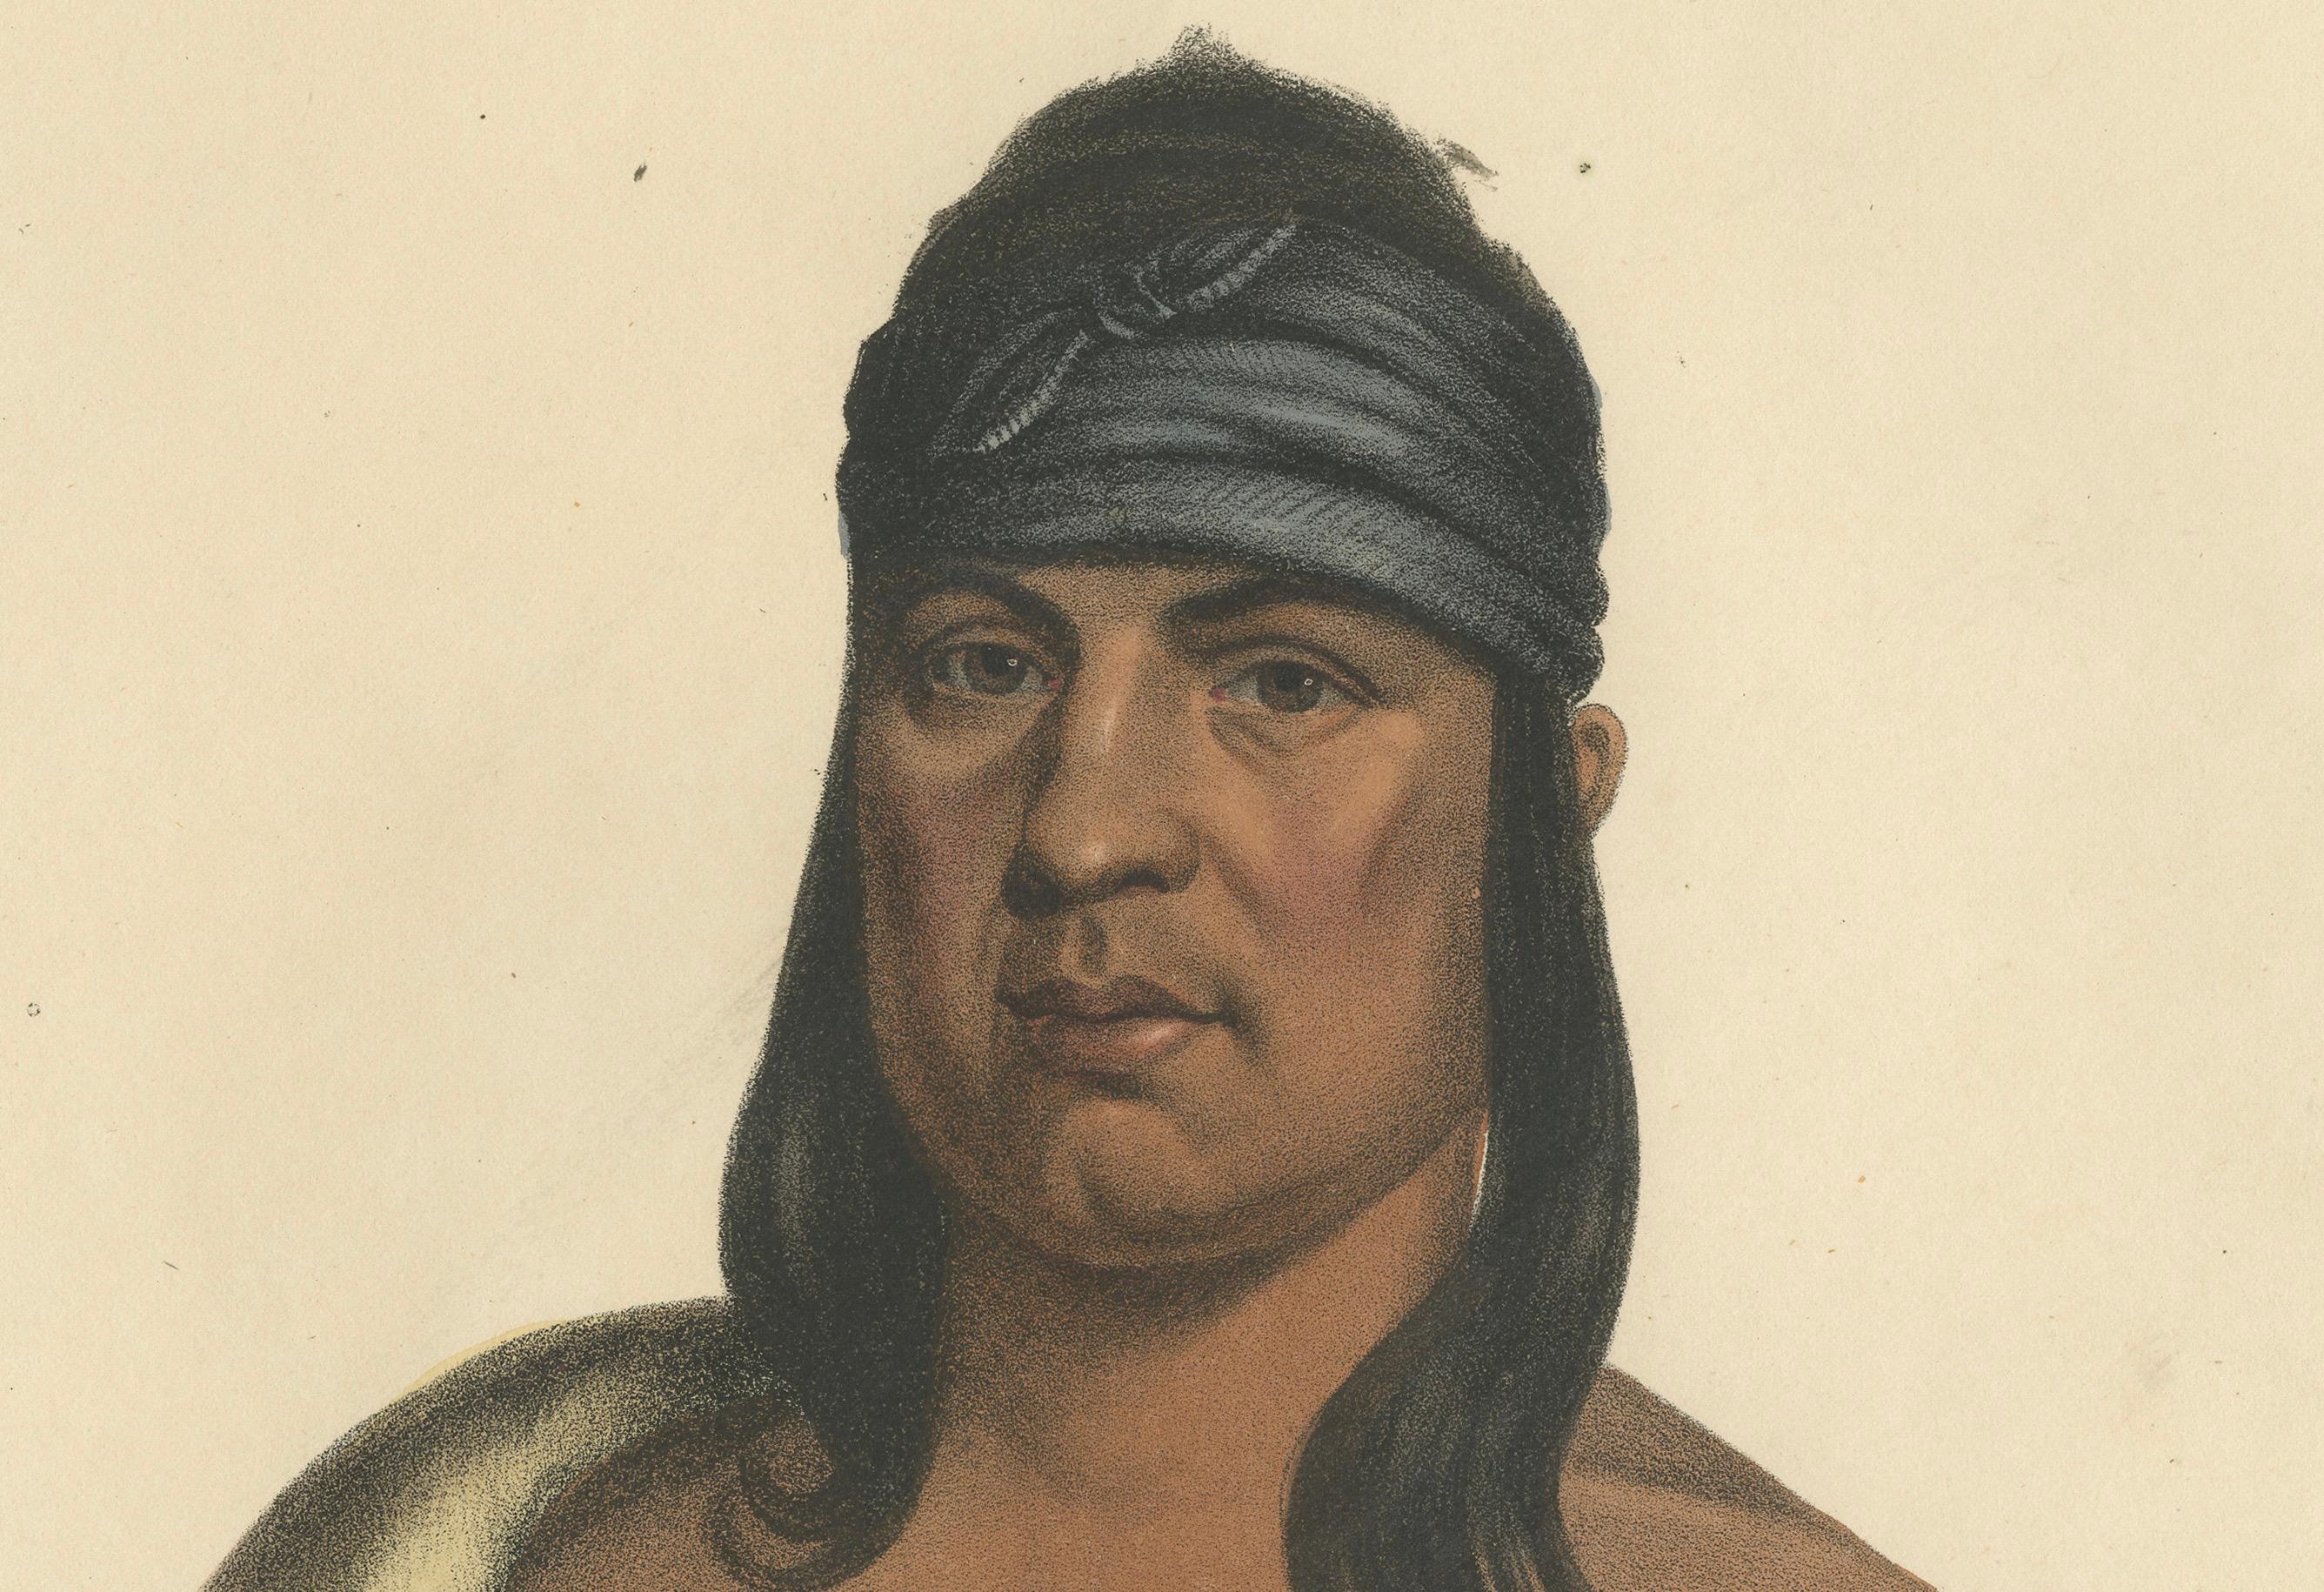 Der Resolute Guardian: Pa-She-Pa-Haw, ein Sauk-Häuptling

Diese Lithografie zeigt Pa-She-Pa-Haw, einen Anführer des Sauk-Stammes, auch bekannt als Sac oder 